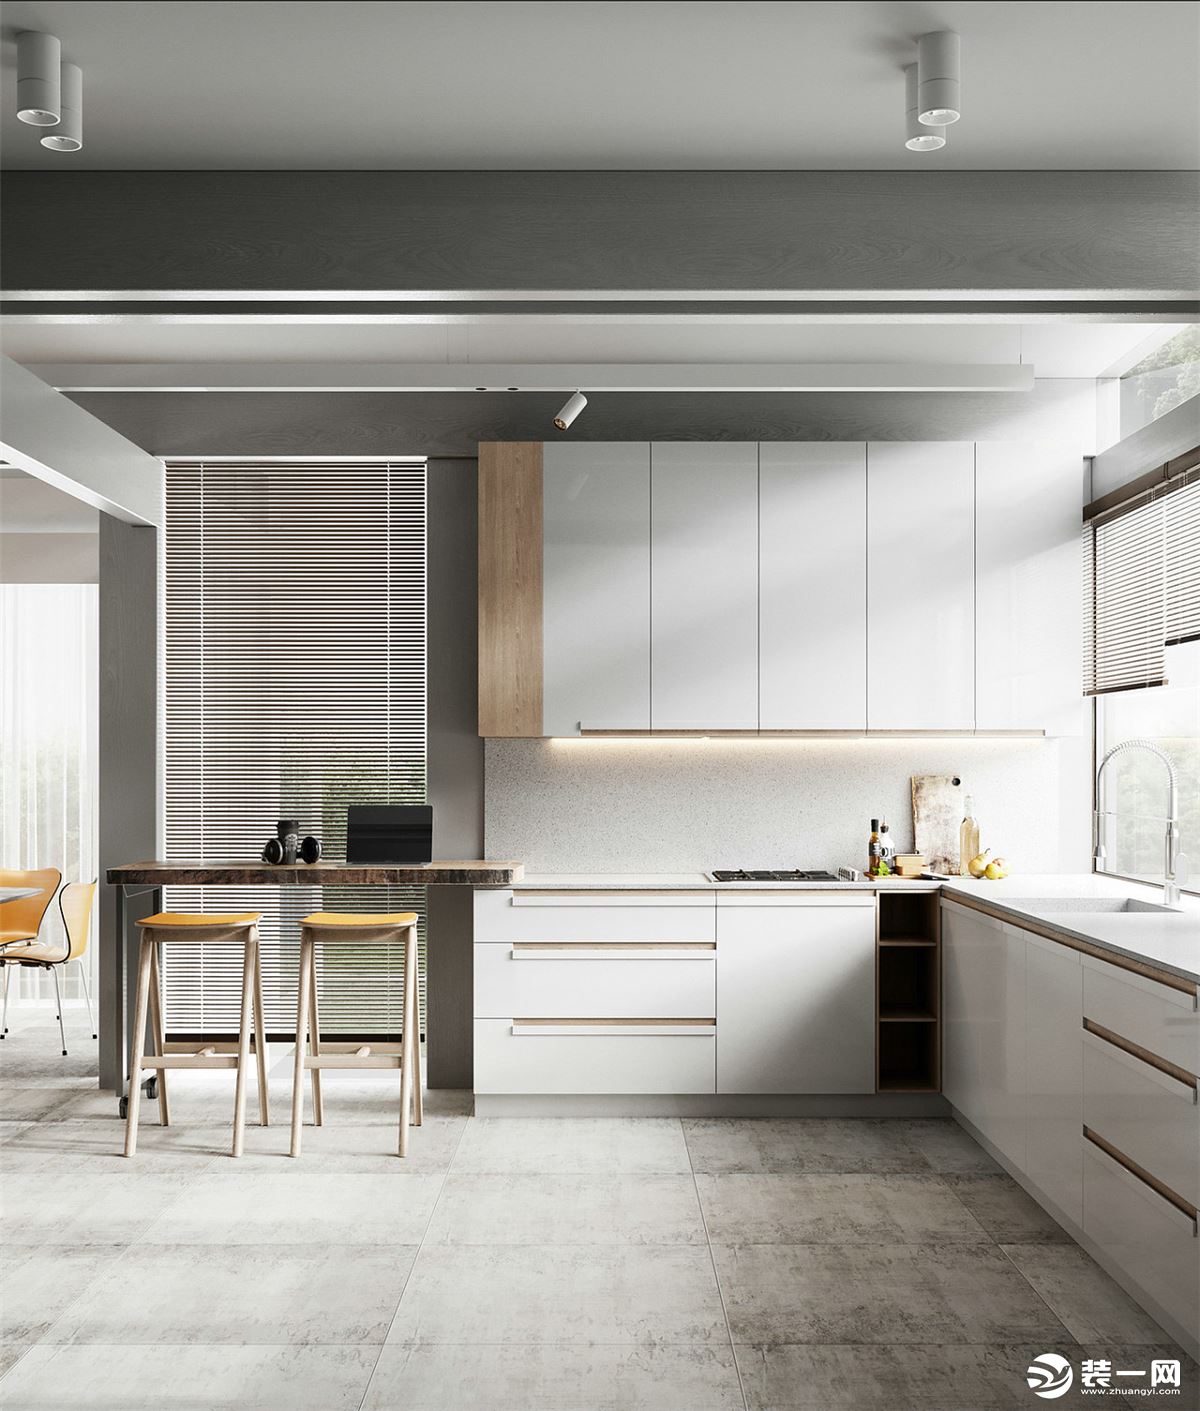 开放式的厨房，显得空间更通透；白色的橱柜，料理台延伸出的小吧台，提升了整个空间的层次感。